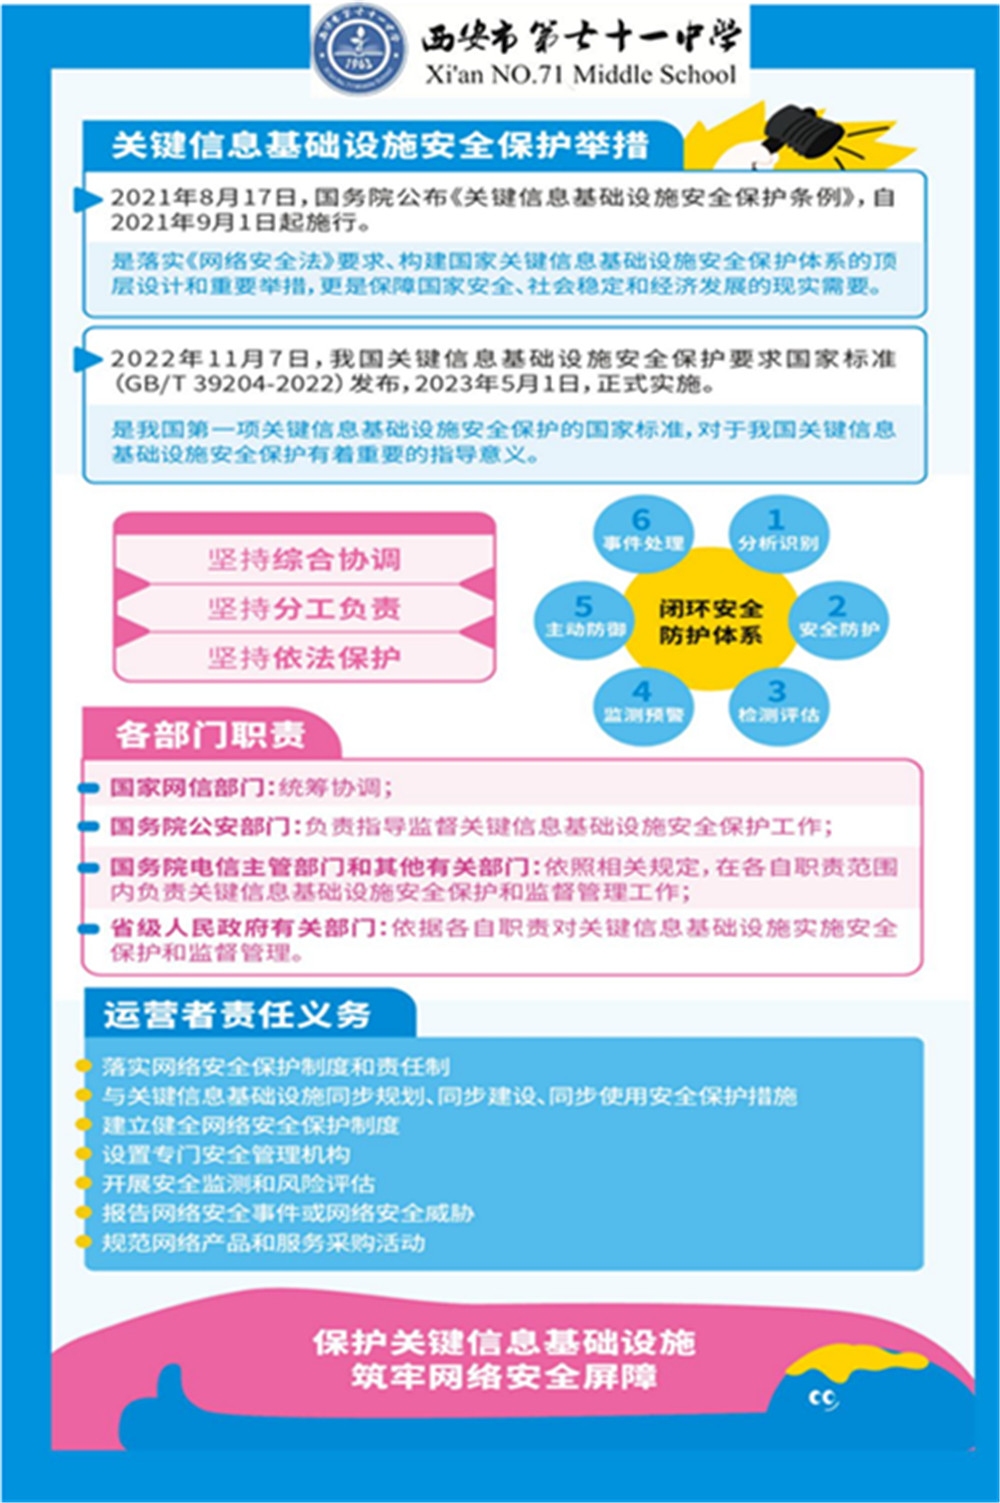 71中网络安全和电信反诈活动宣传页_04